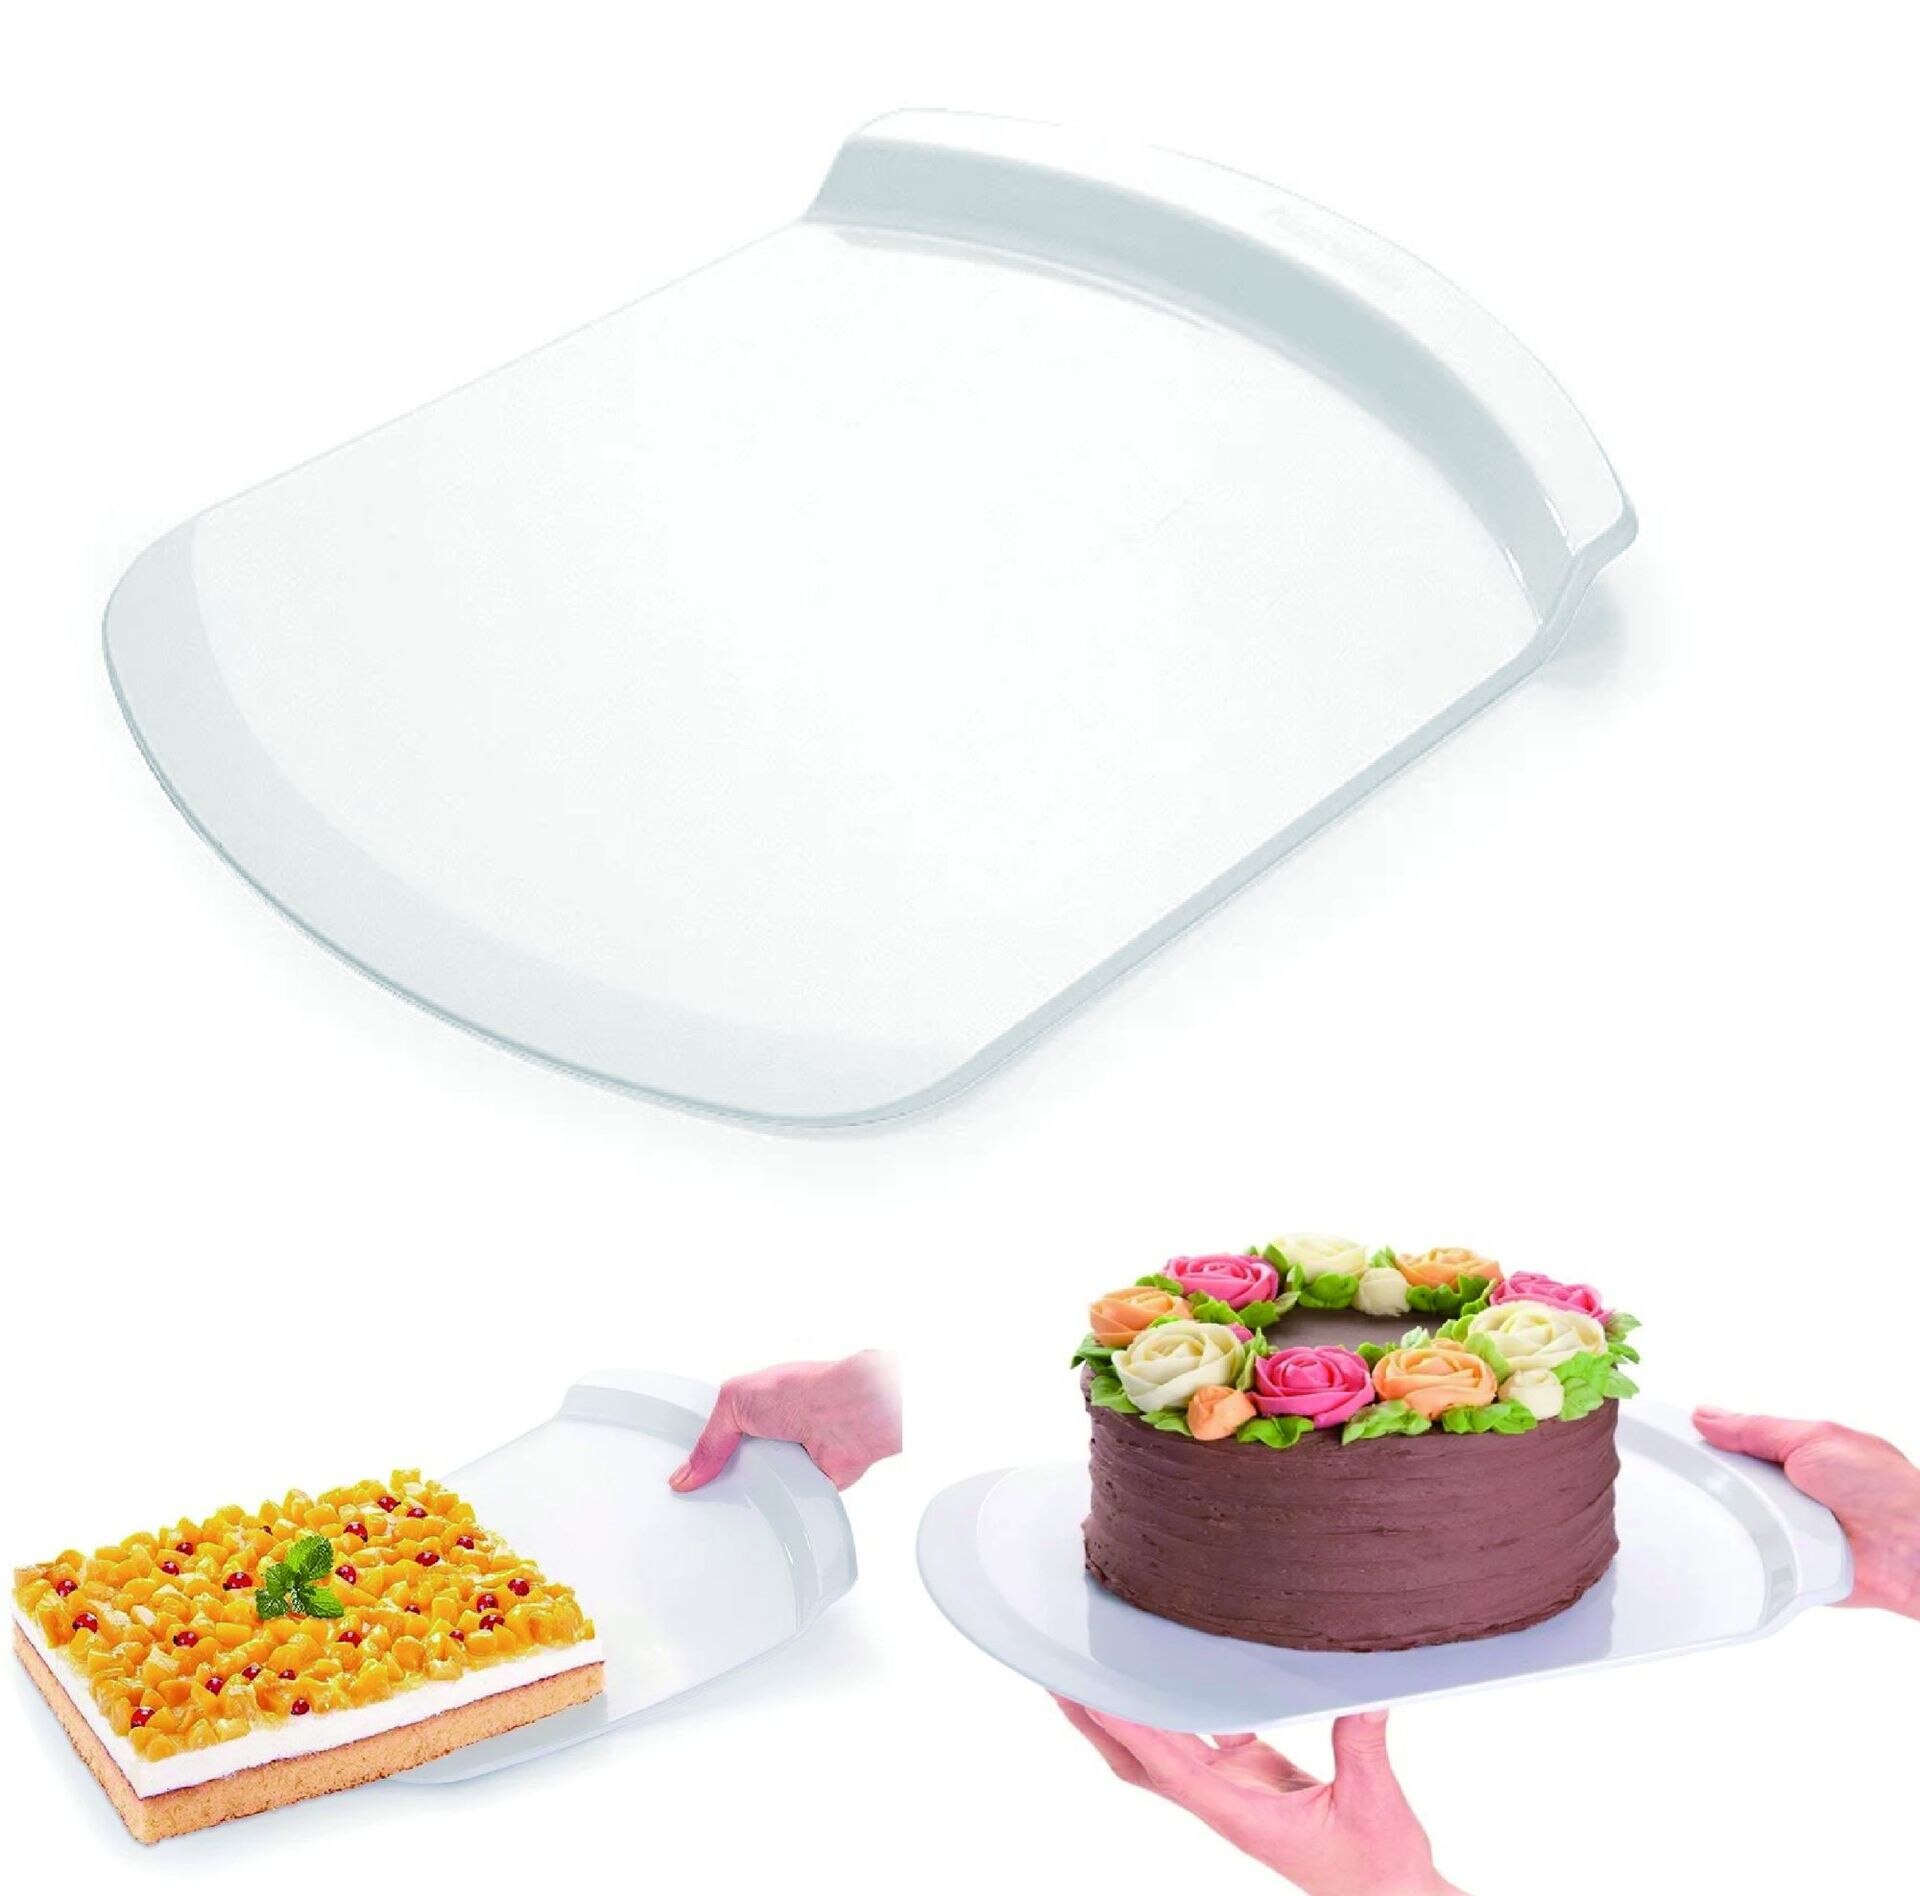 Cake Transfer Plaat Plastic Overdracht Cake Tray Bakken Tools Bewegende Plaat Cake Lifter Blade Schoppen Bakvormen Pastry Schraper